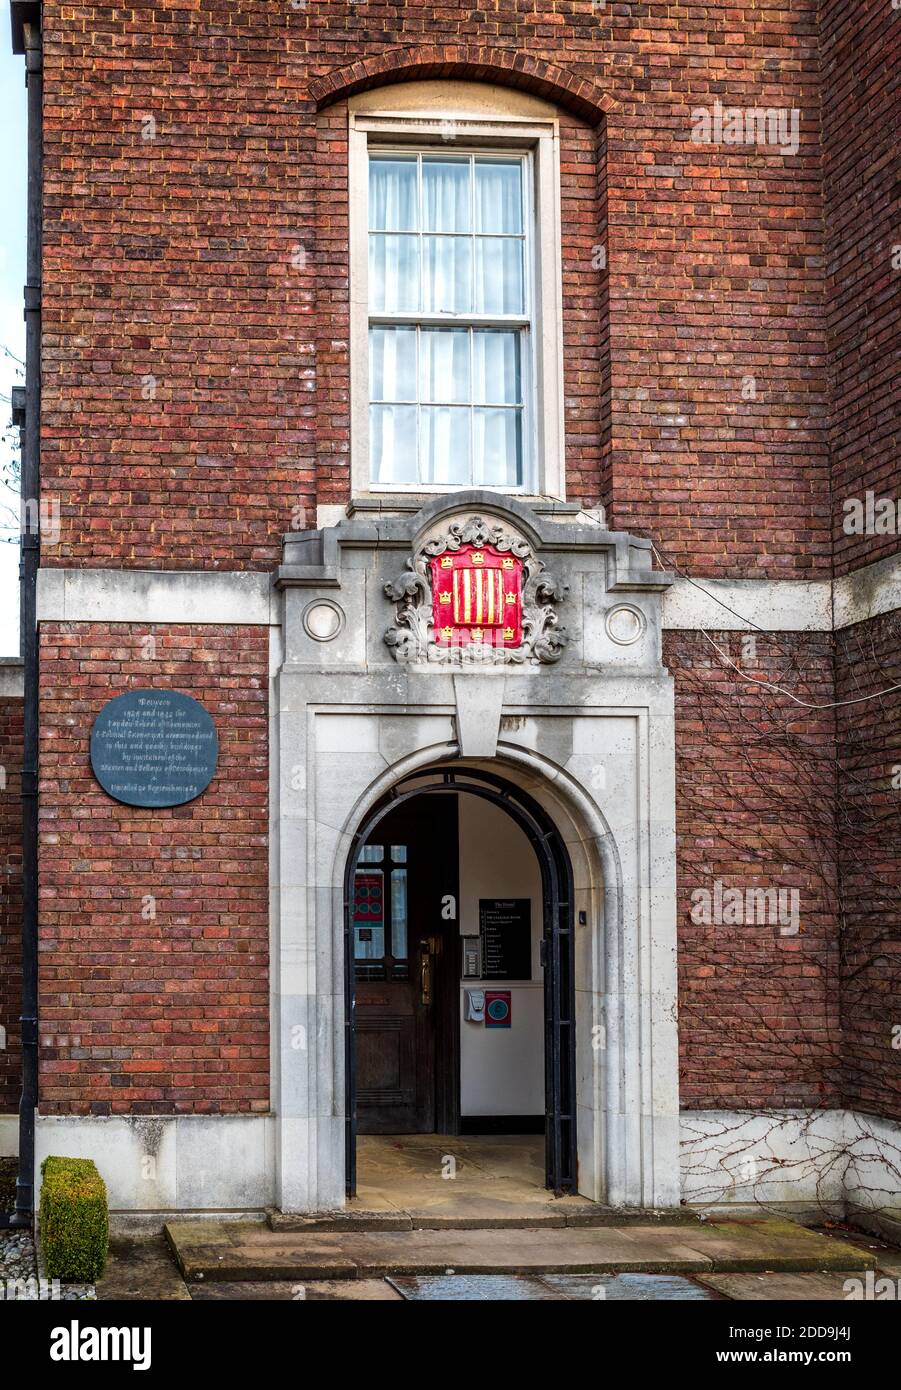 Peterhouse Hostel, Peterhouse College, Université De Cambridge. L'auberge abritait la London School of Economics 1939-1945. L'Auberge Peterhouse. Banque D'Images